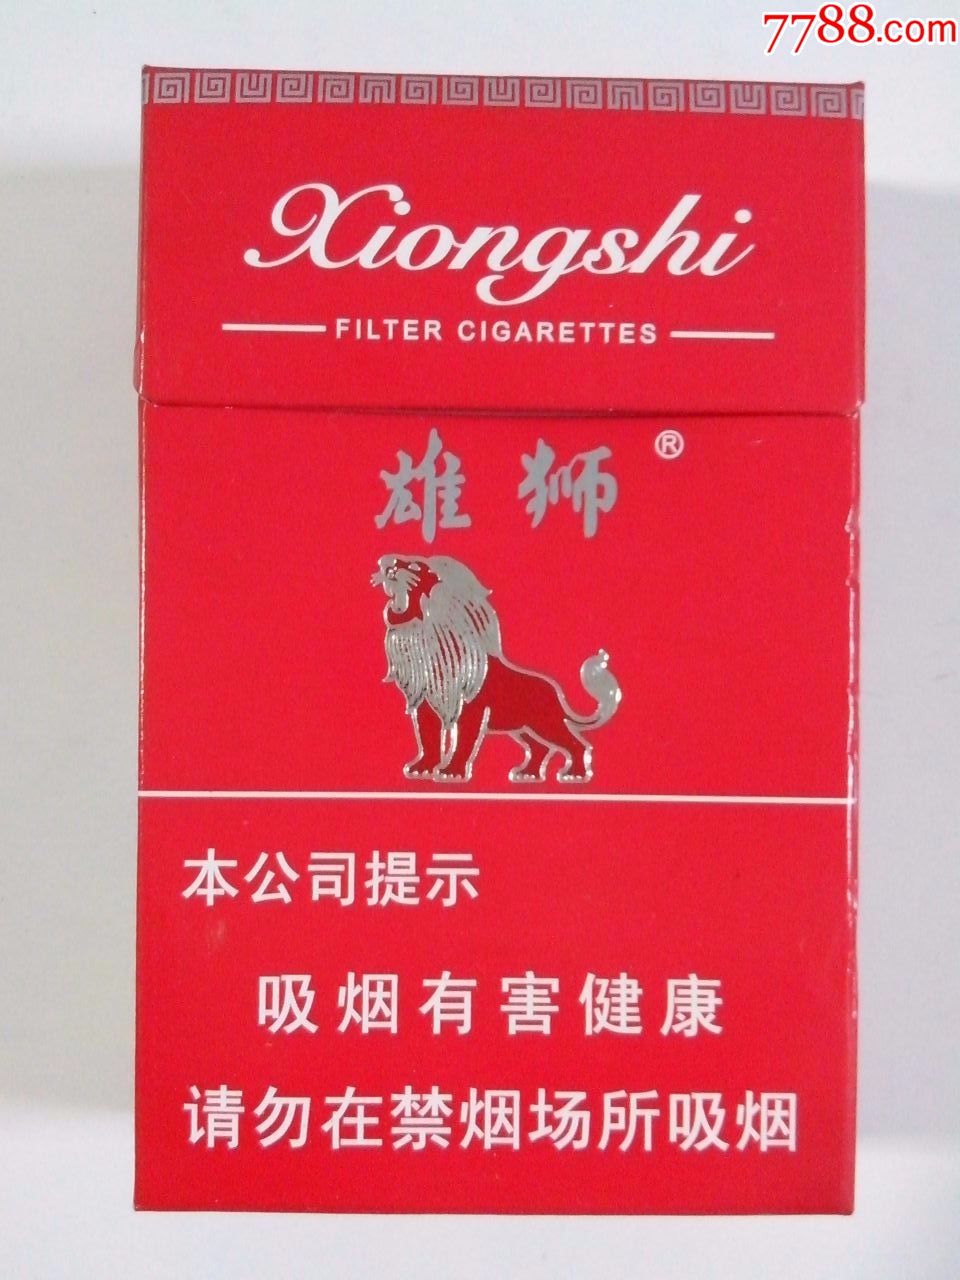 红狮香烟图片